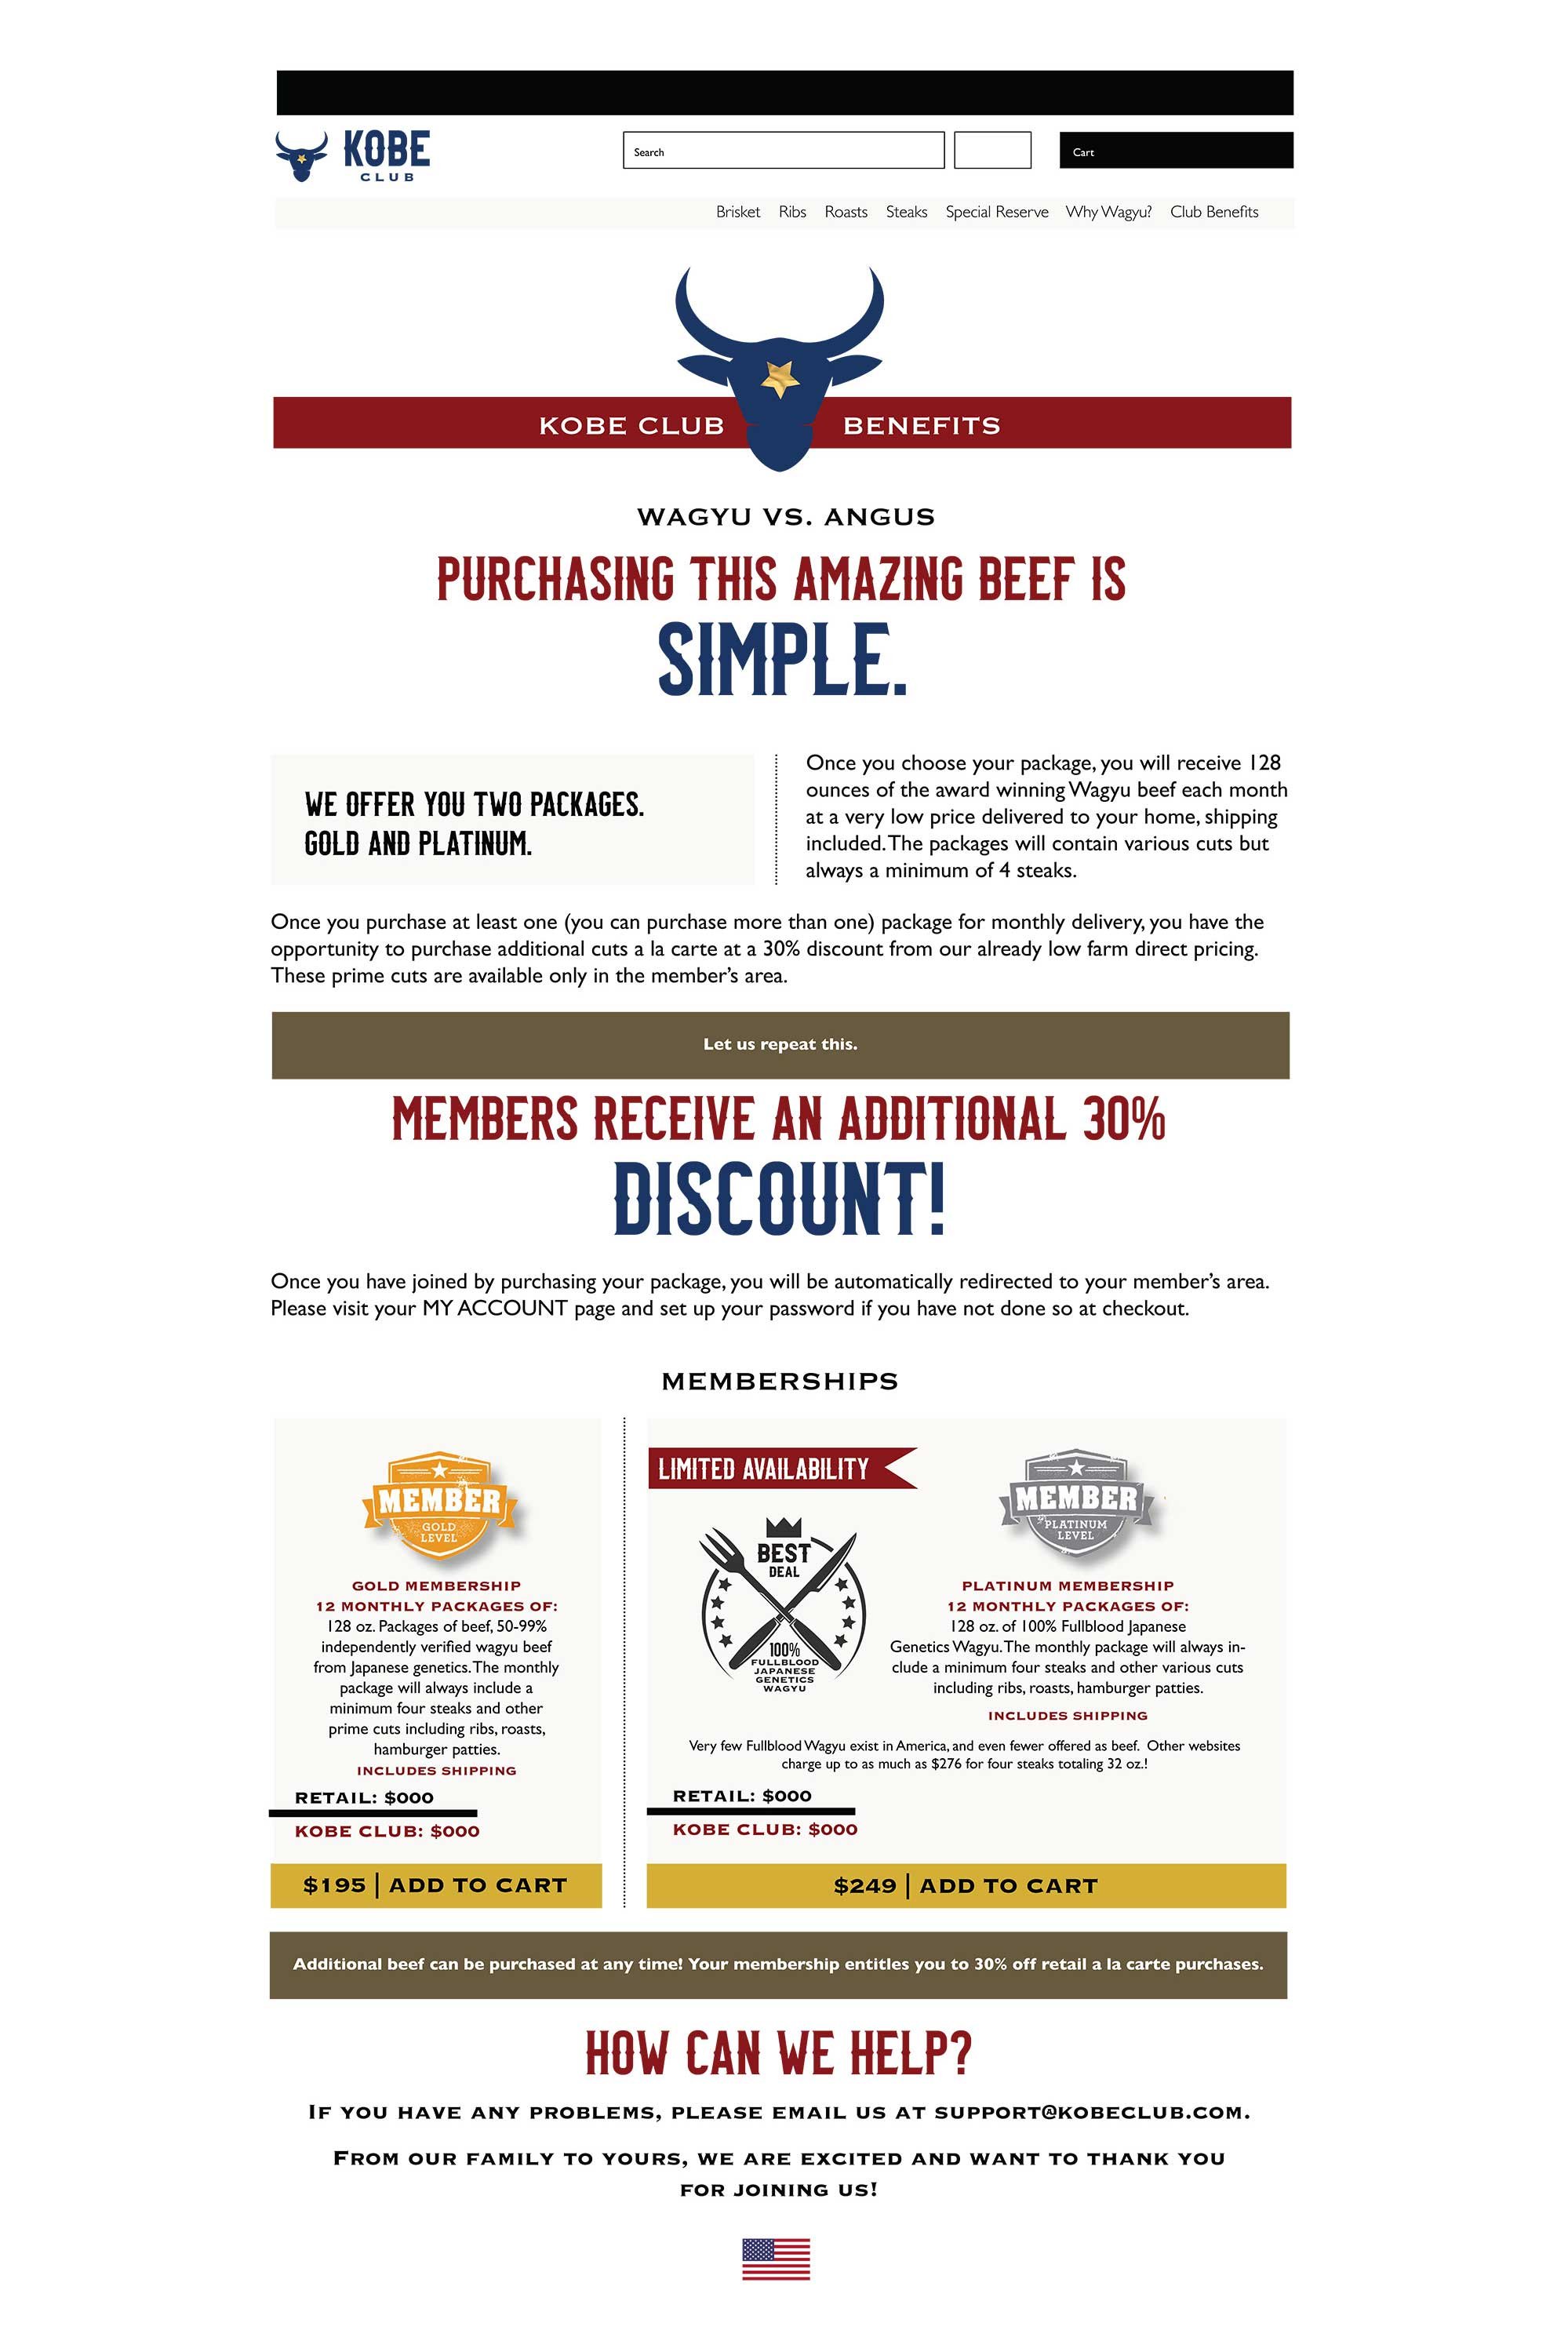 kobe-beef-website-layout-4.jpg